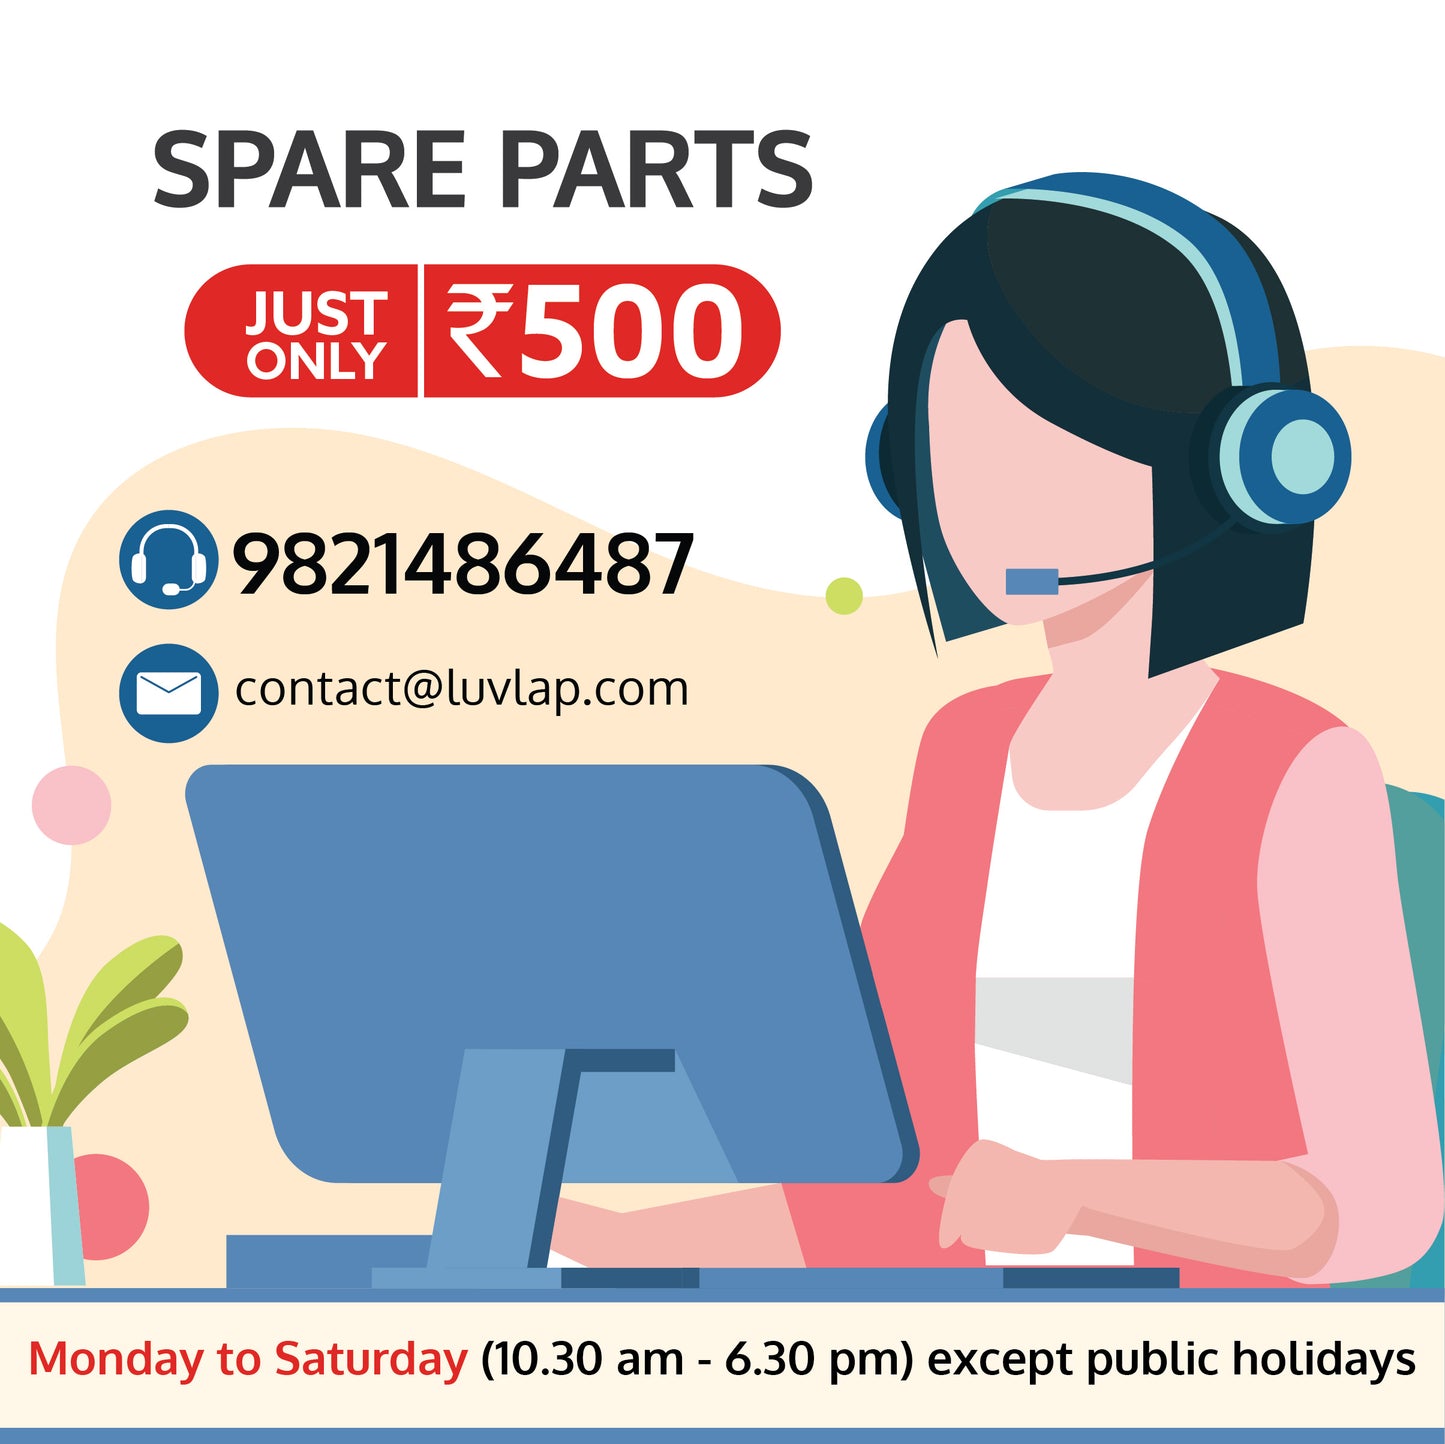 Spare Parts - 500